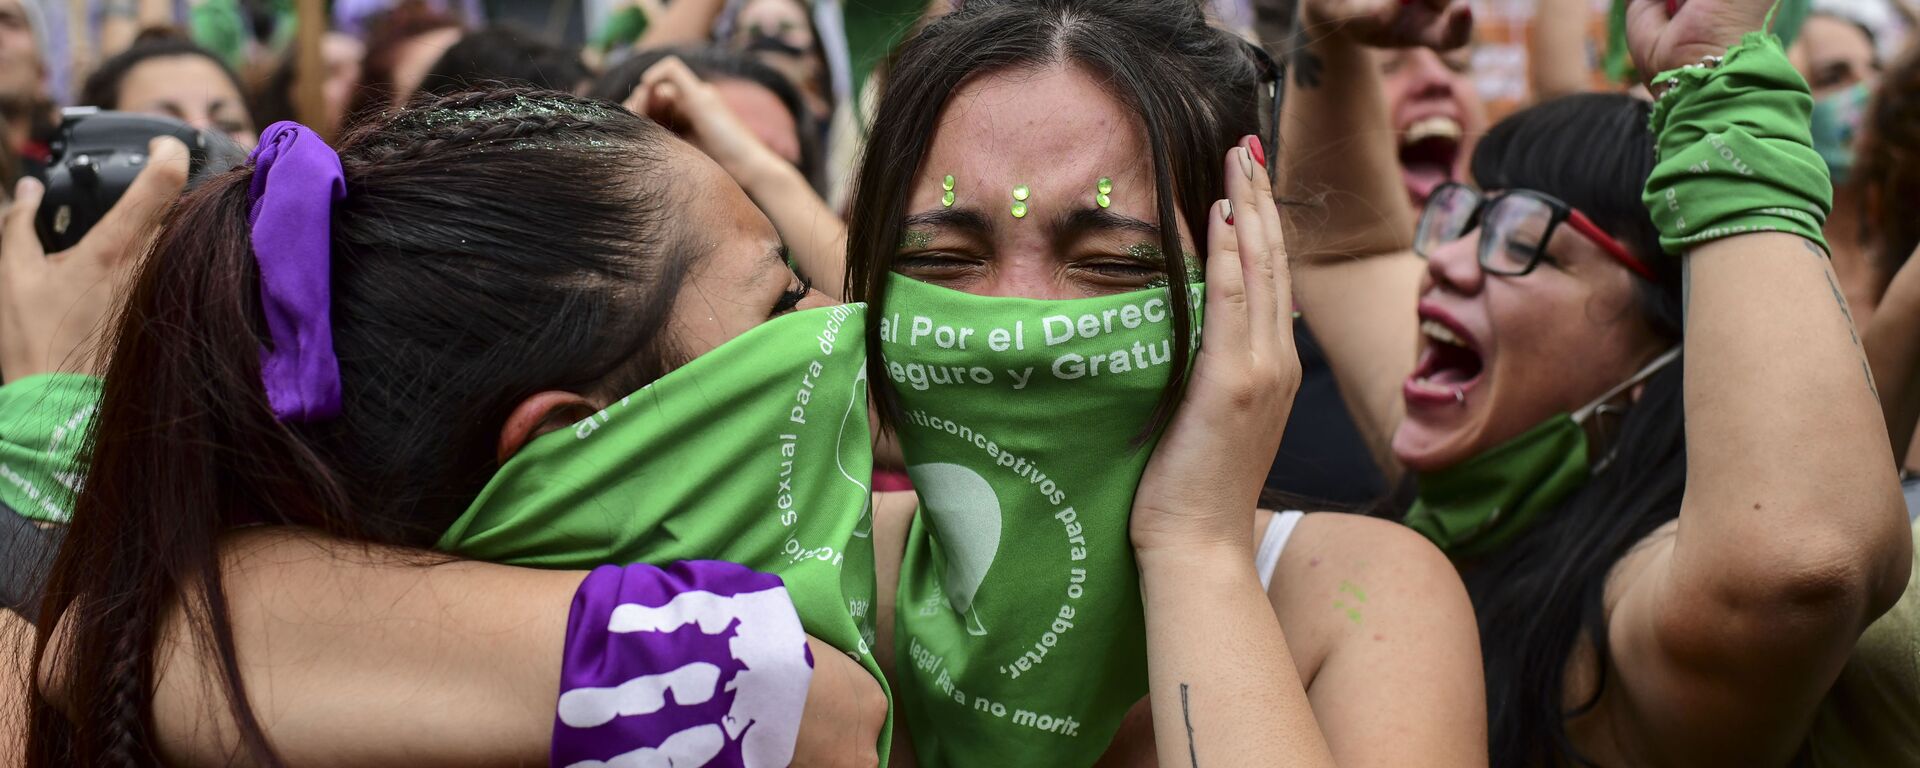 Mujeres argentinas celebrando la aprobación de la ley de aborto en Argentina - Sputnik Mundo, 1920, 31.12.2020